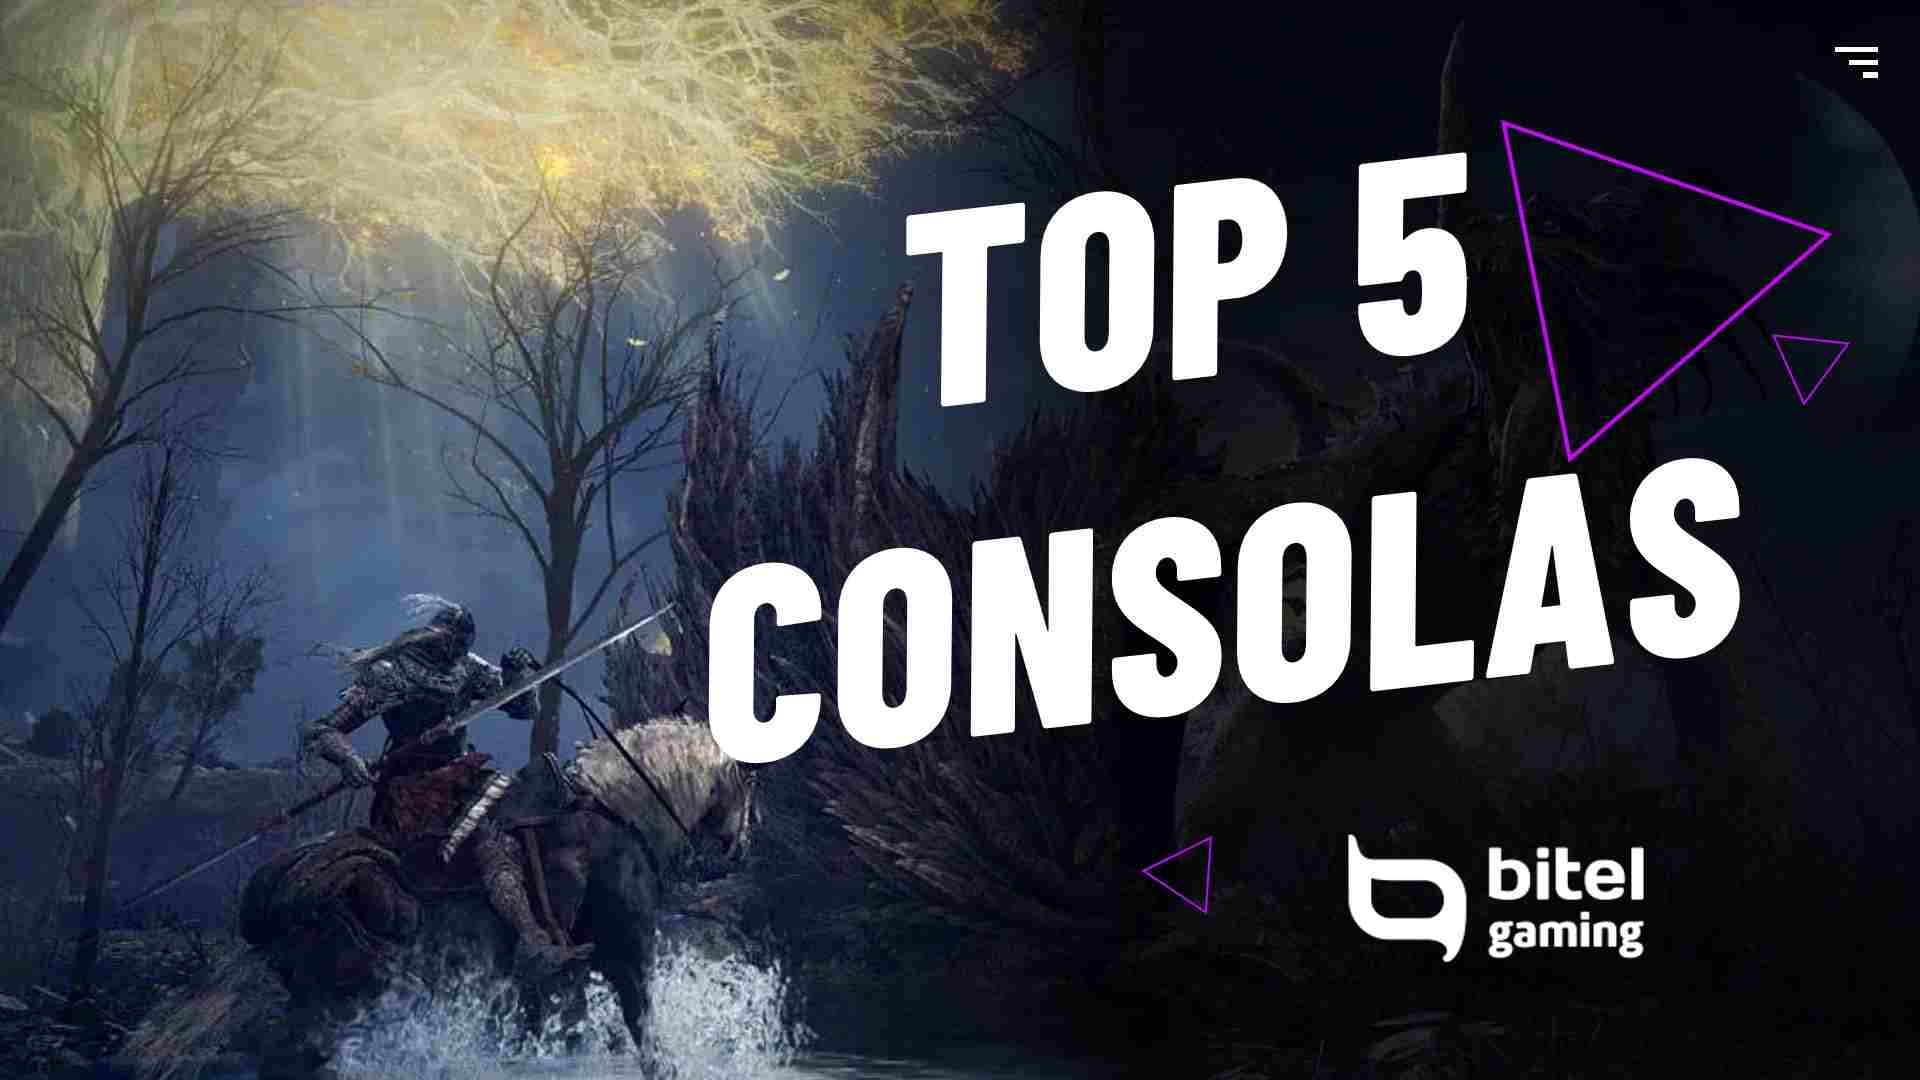 Top 5 Juegos Consolas 2022 - Bitel Gaming